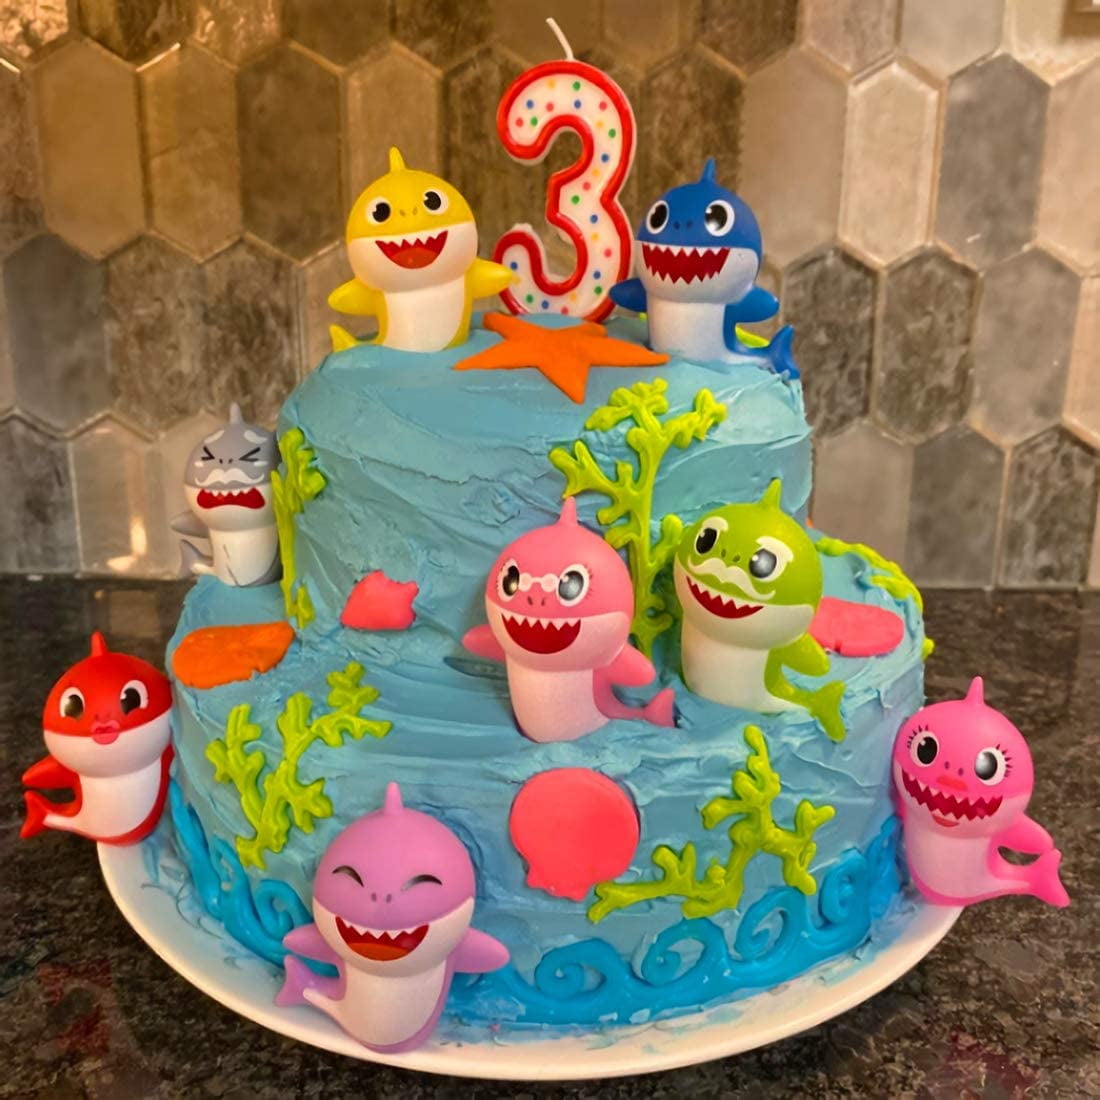 Baby Shark Birthday Cake| Baby Shark Theme Cake For Kids